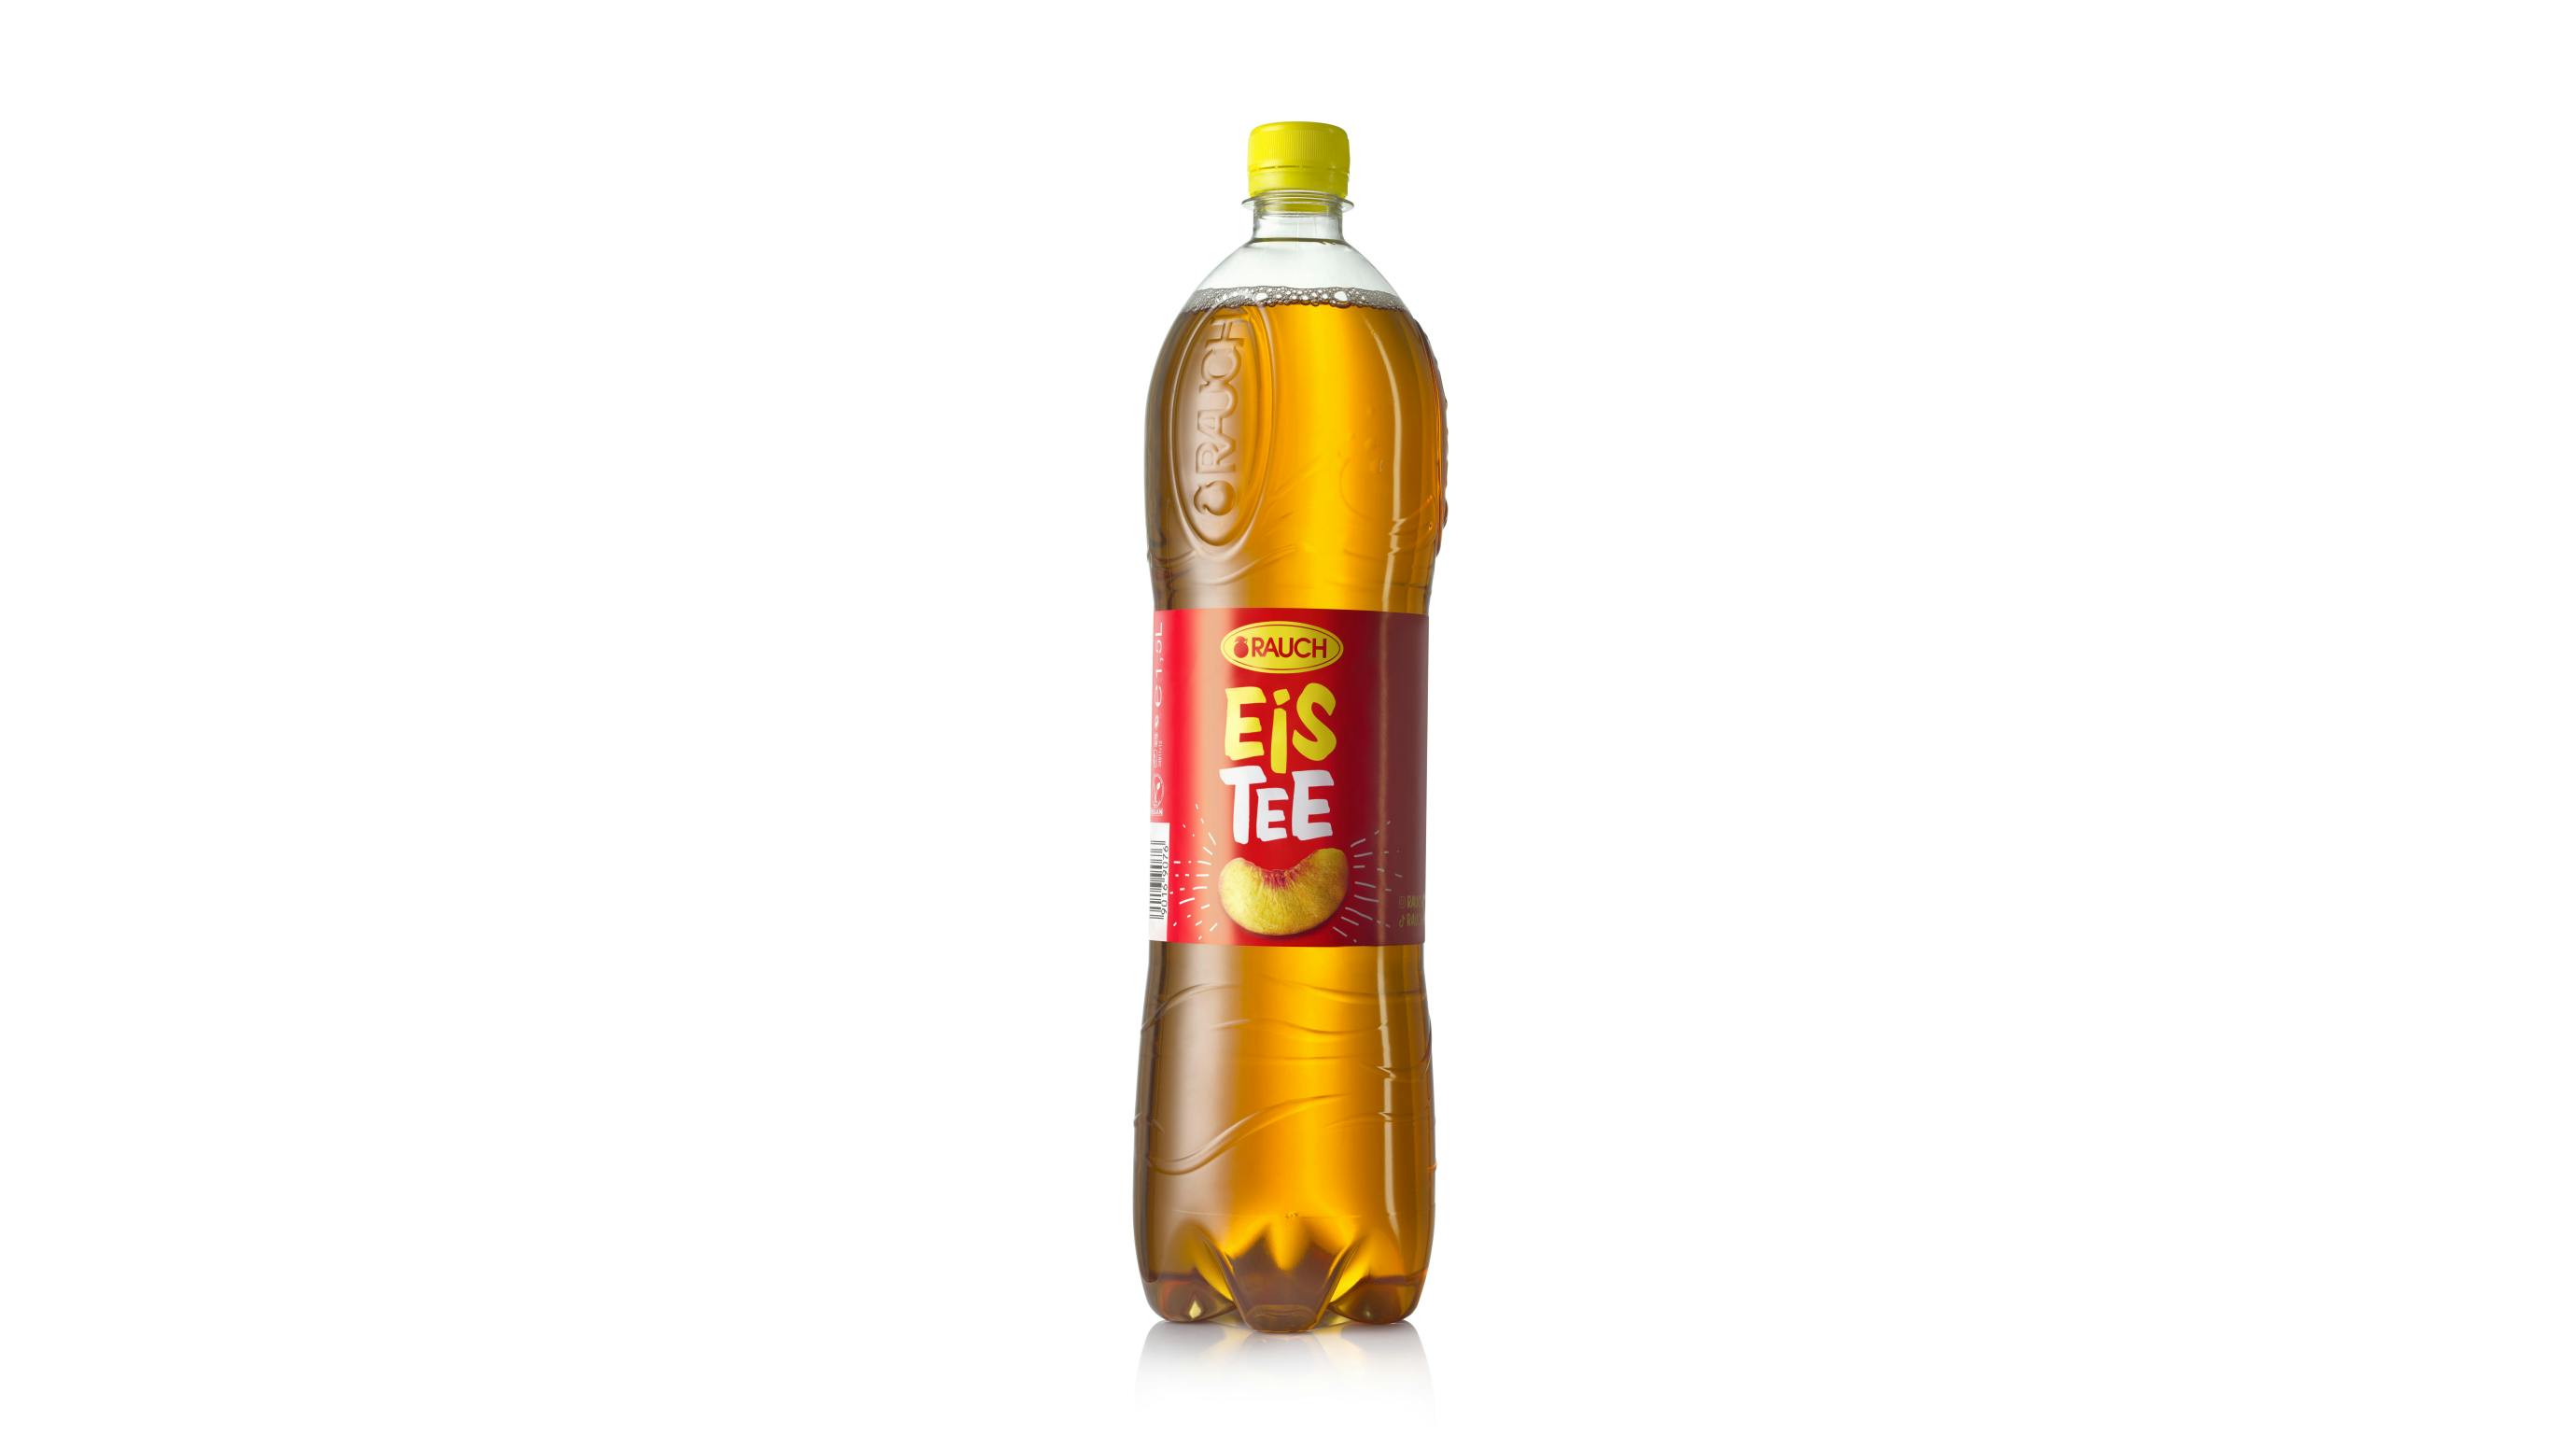 Rauch Eistee Pfirsich bottle with closure